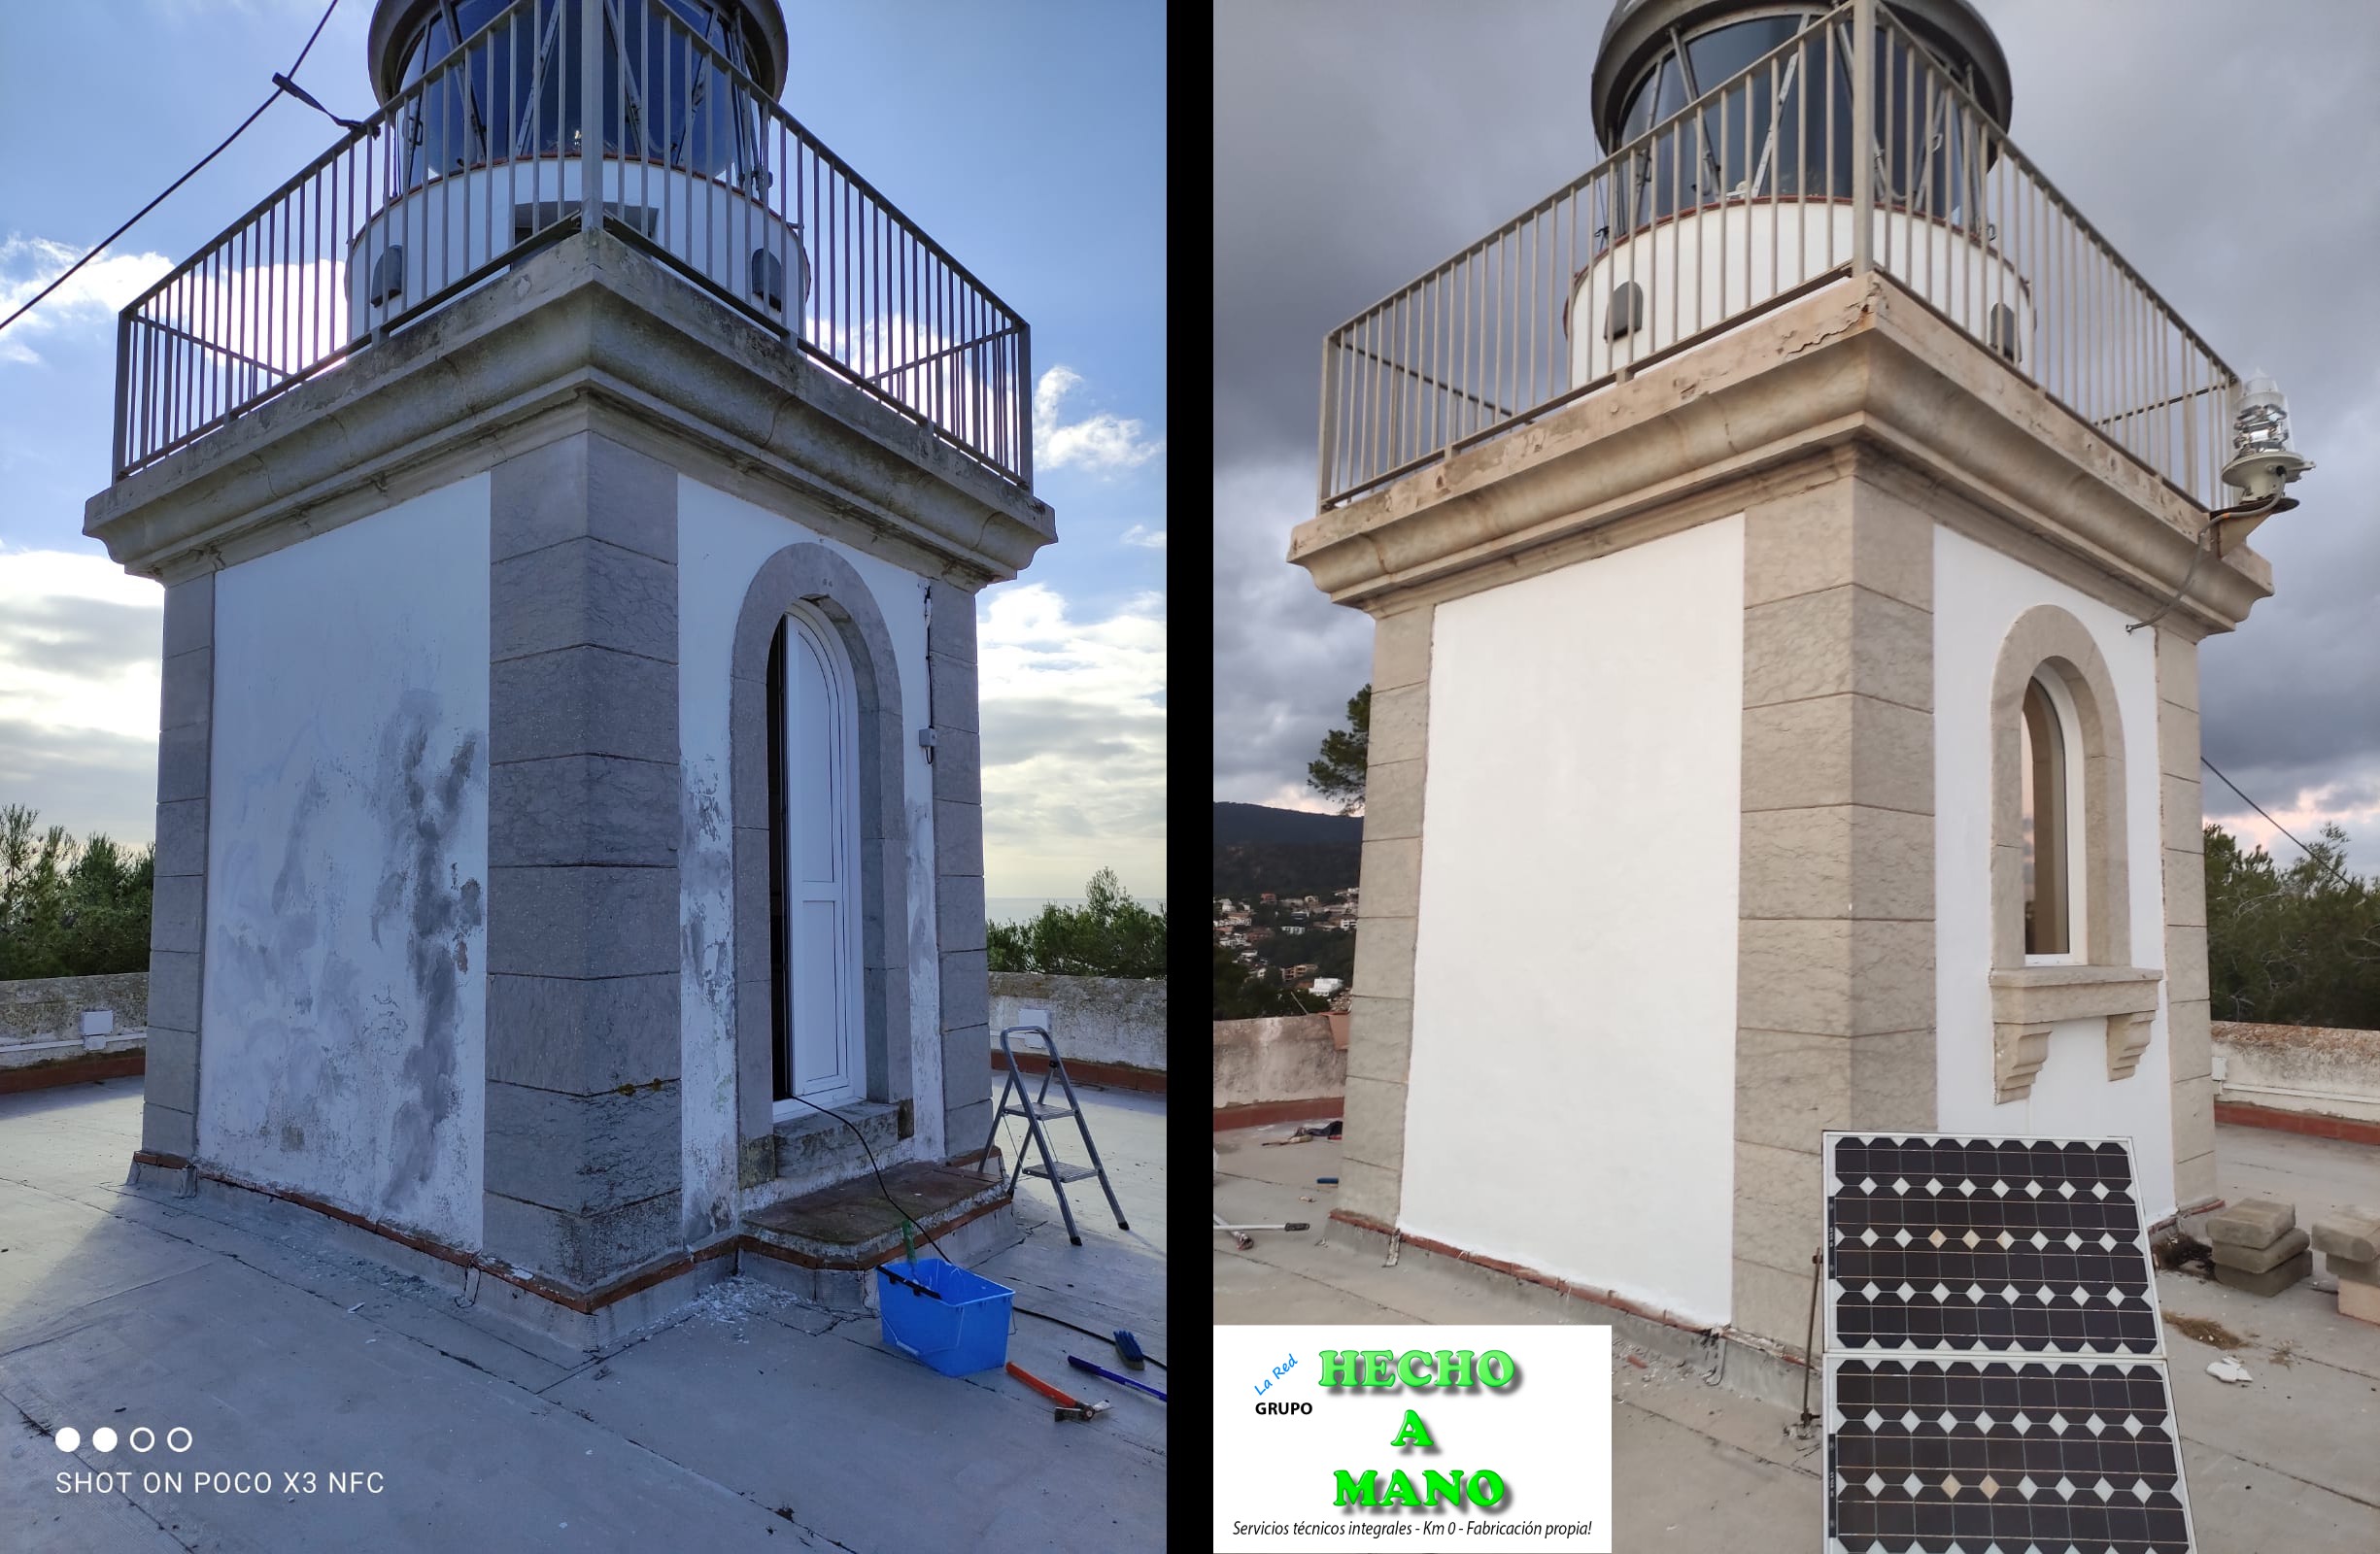 Rehabilitación del faro en Tossa de Mar, rehabilitación de fachadas, rehabilitación de paredes exteriores, uso de pintura de revestimiento para exteriores